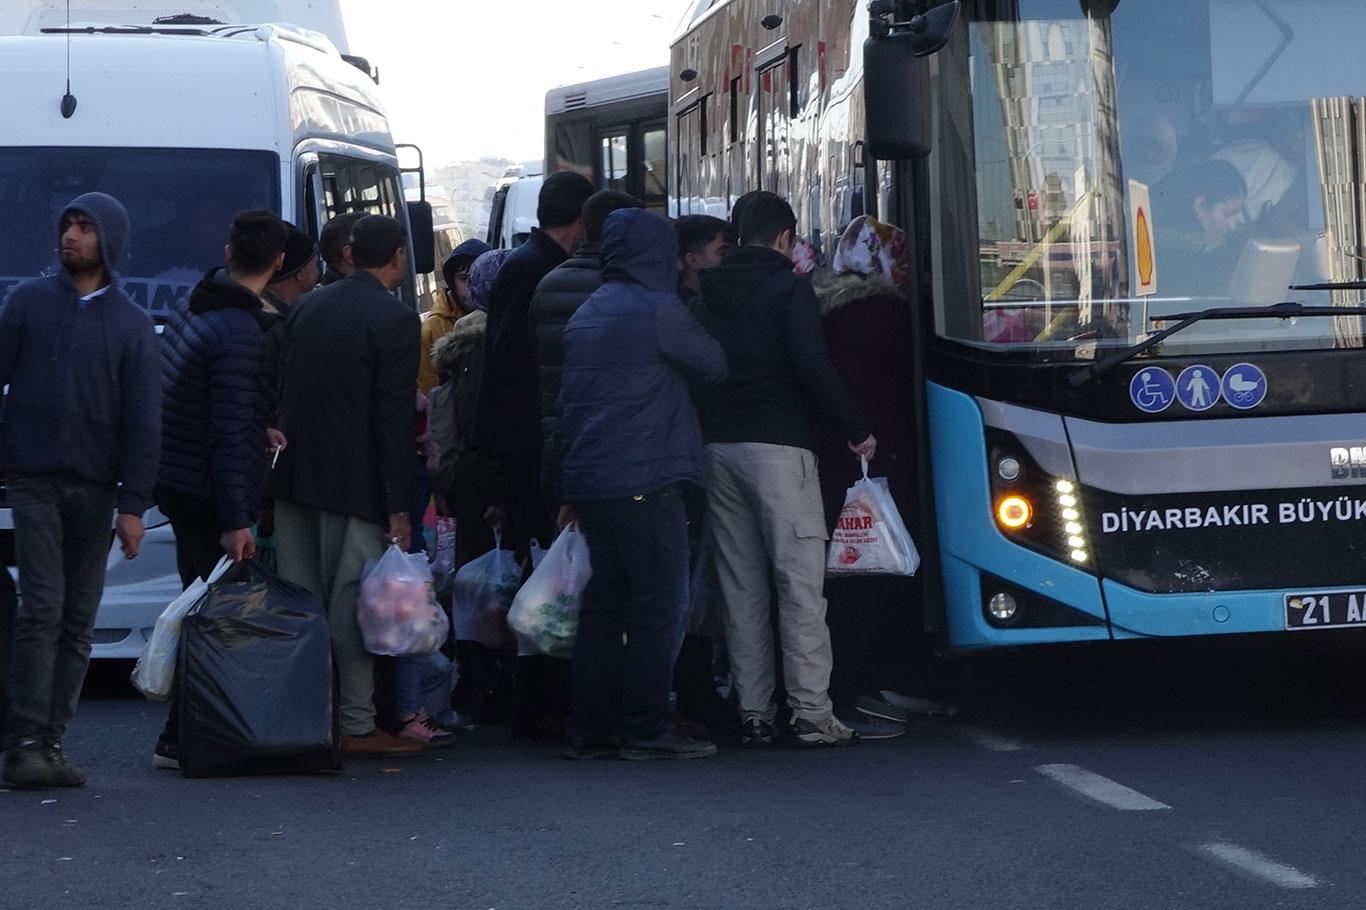 Diyarbakır'da toplu taşıma araçları yetersiz kalıyor